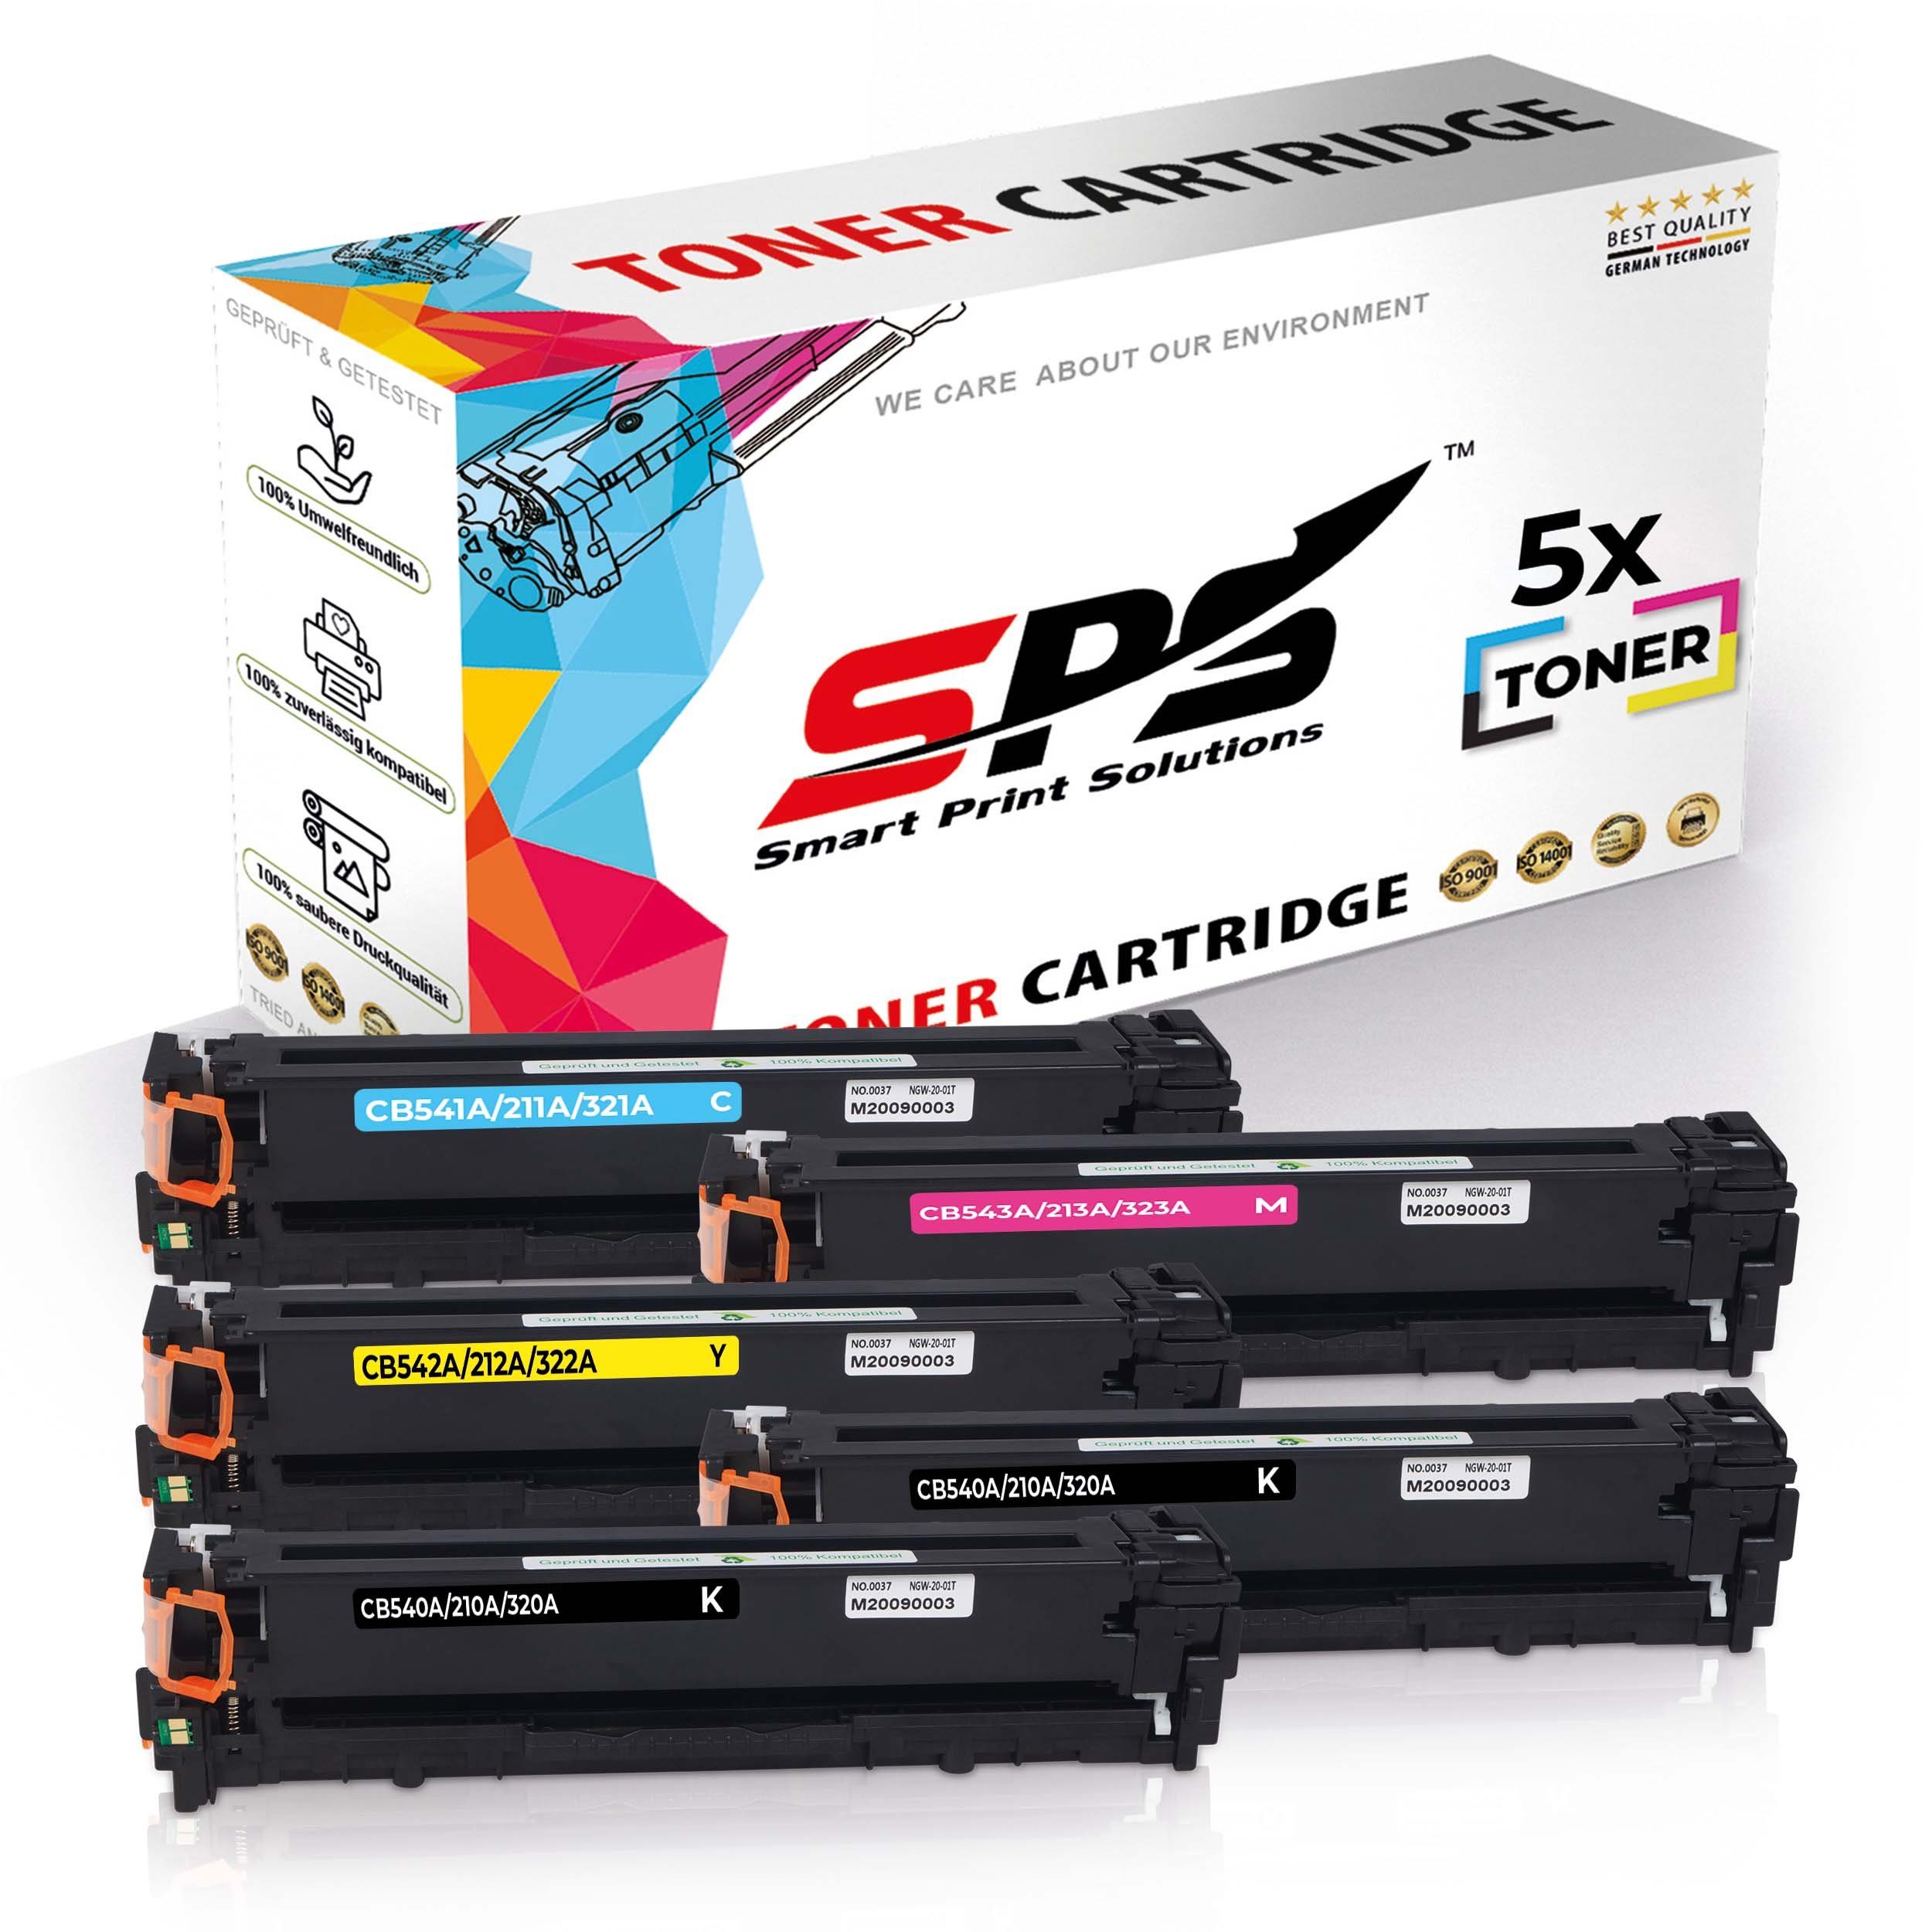 SPS Tonerkartusche 5x Multipack Set Kompatibel für HP Color LaserJet CP 1517 N (125A/CB54, (5er Pack)